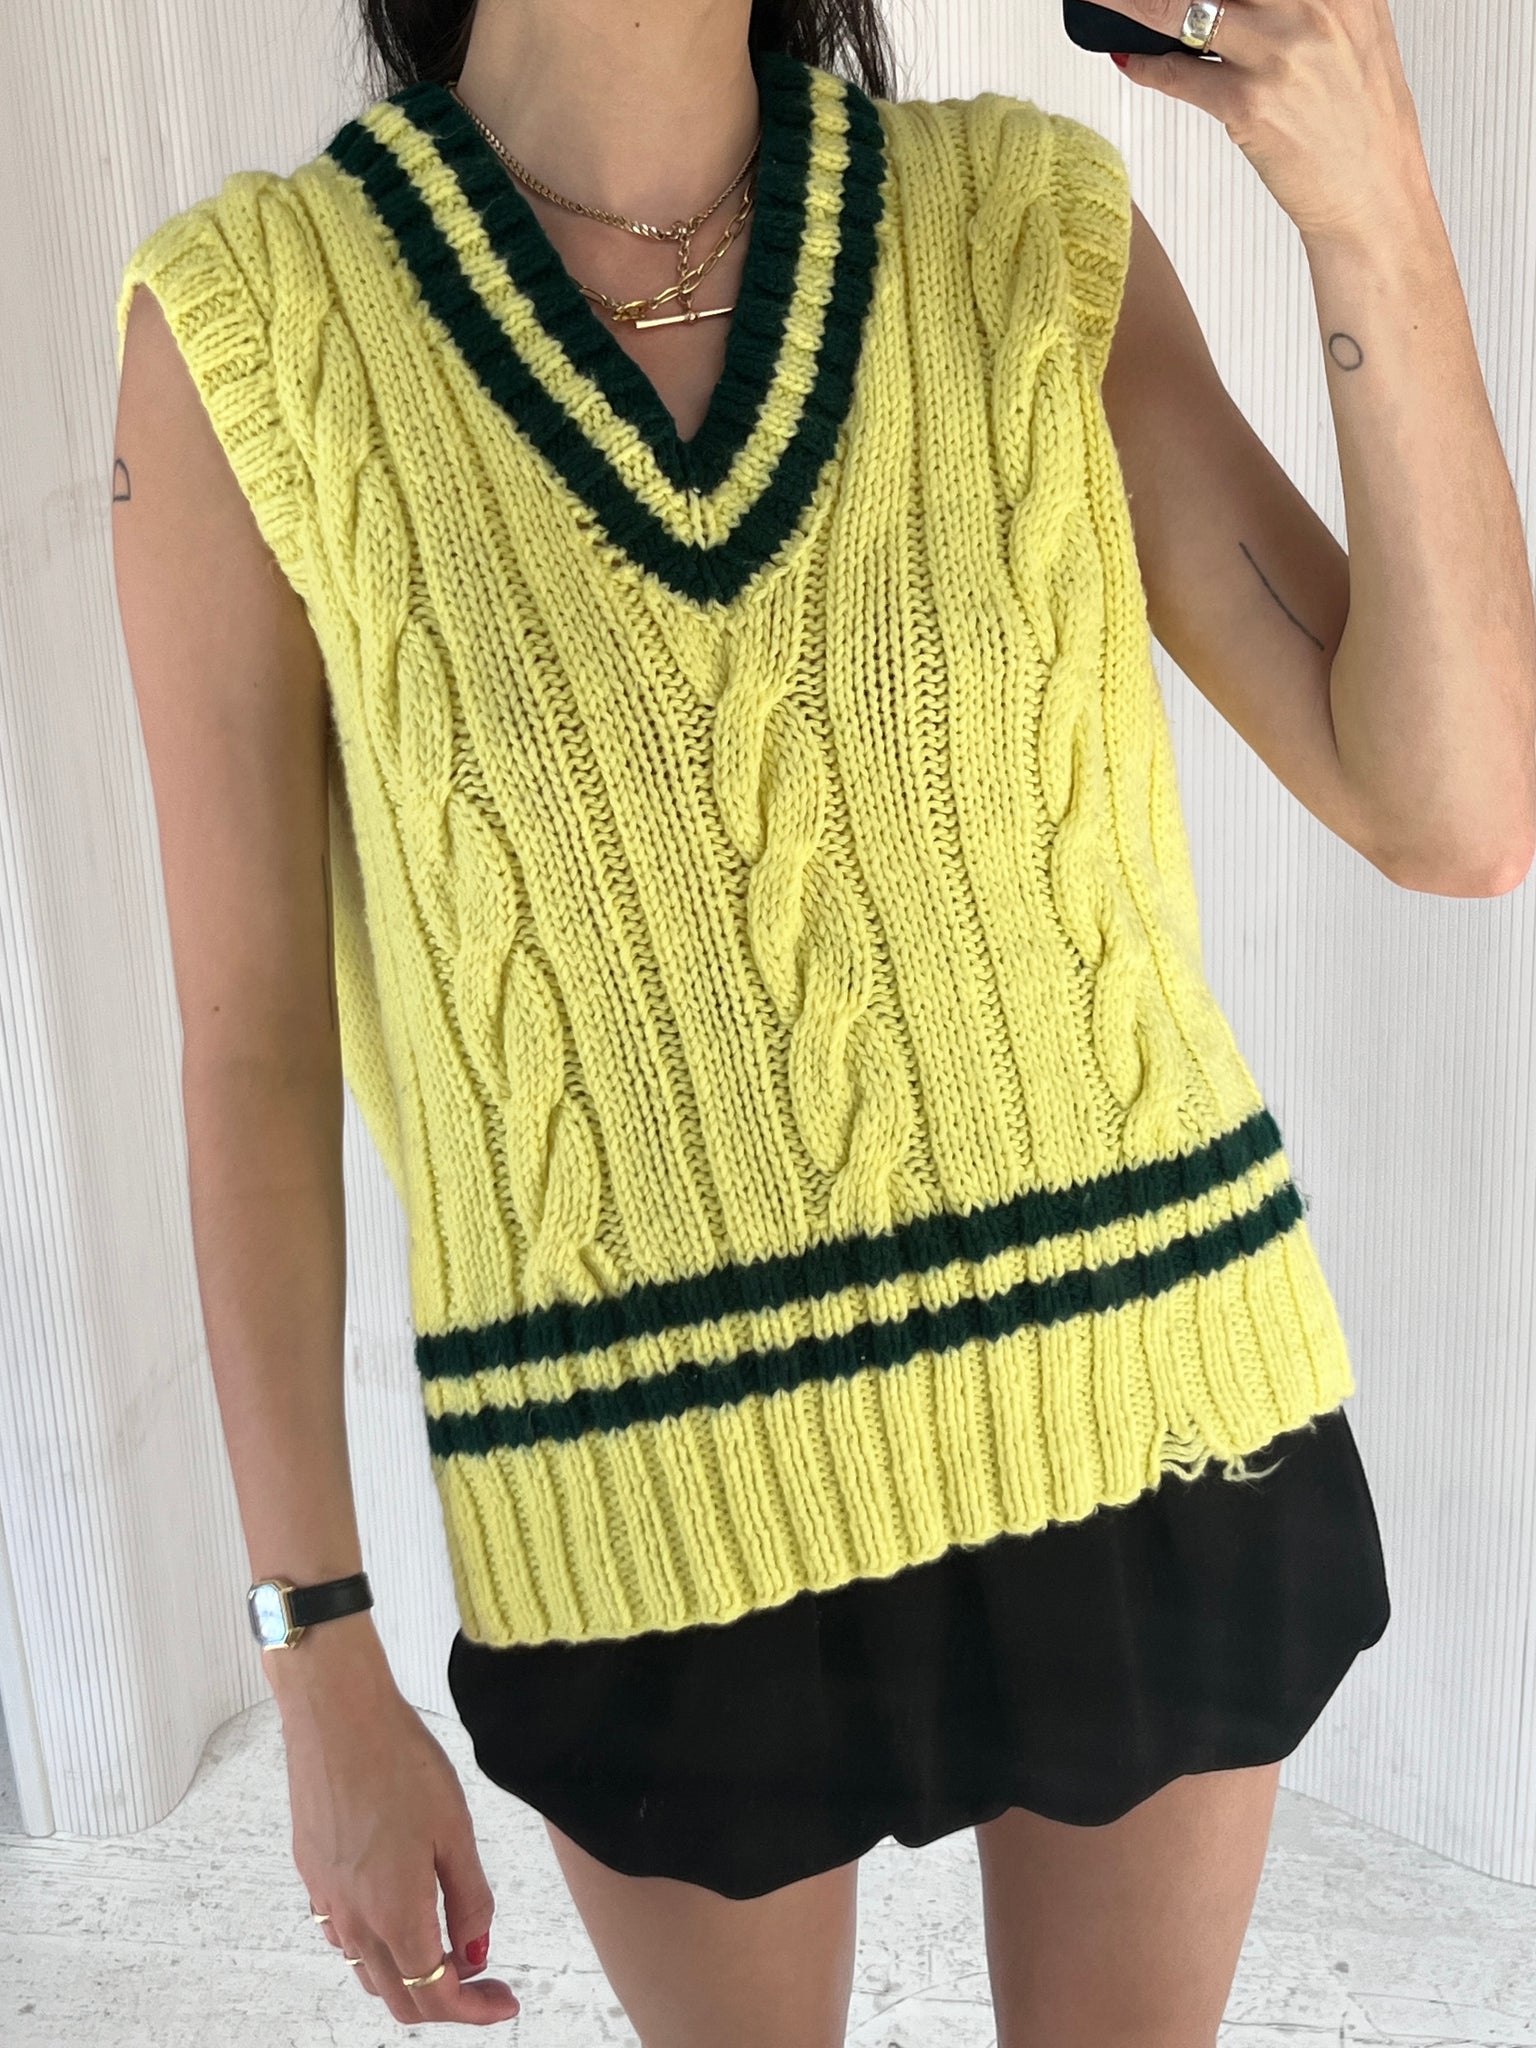 80s Neon Sweater Vest Acrylic